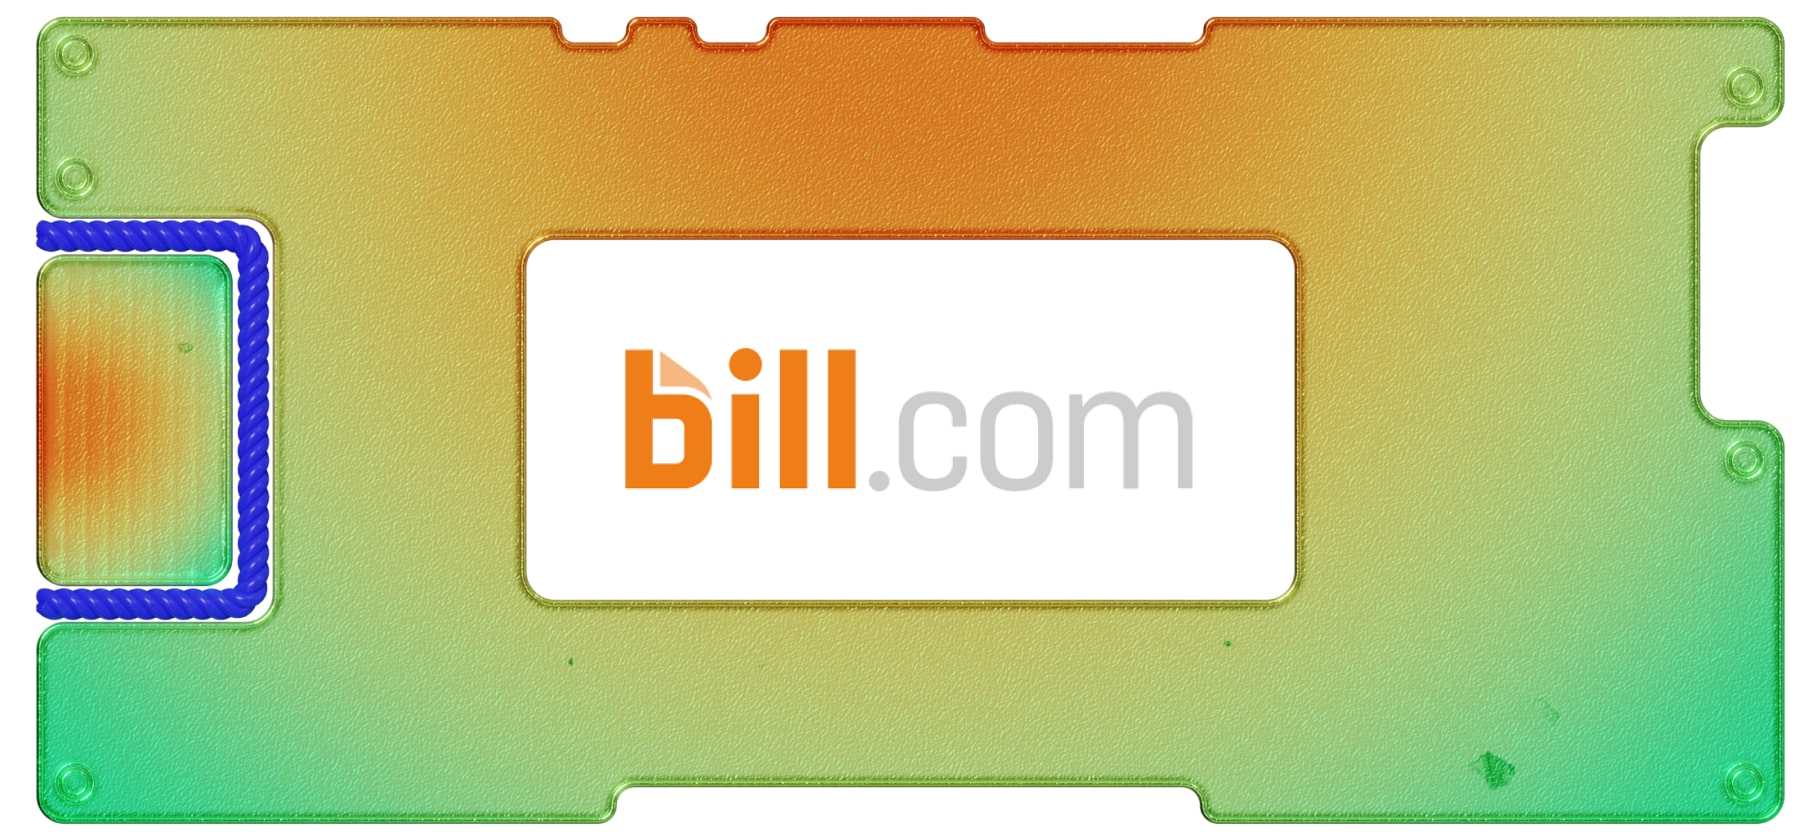 Инвестидея: Bill.com, потому что не верьте бухгалтеру на слово